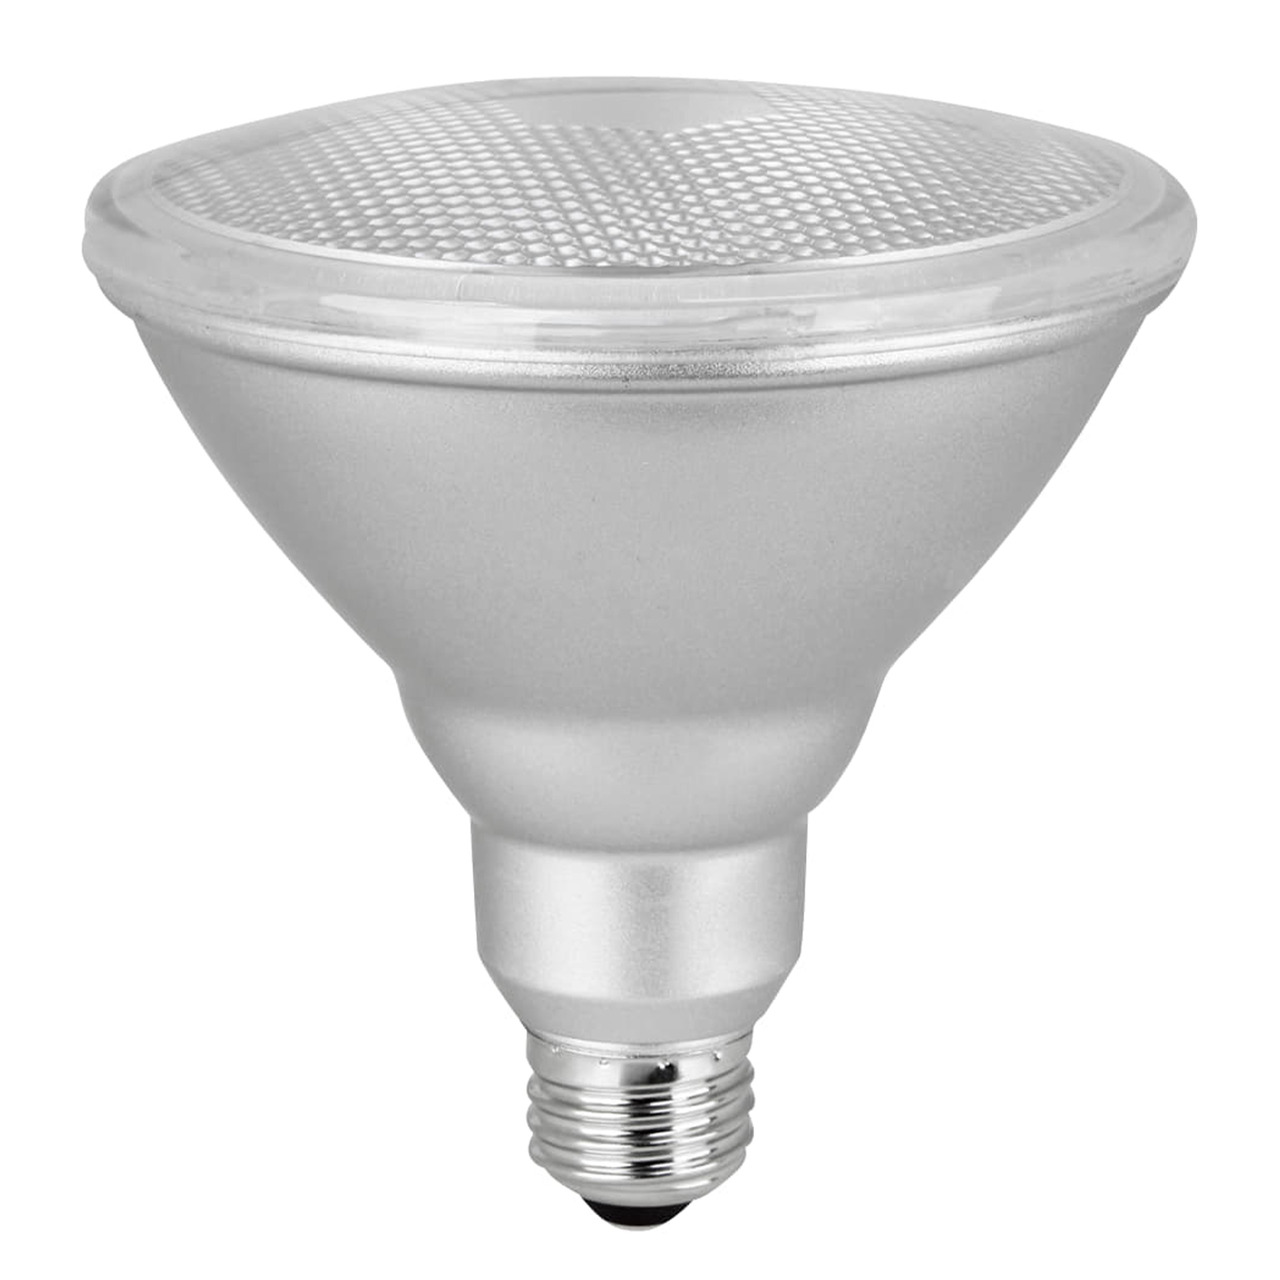 Lightme 12-W-PAR38-LED-Lampe E27- warmweiss unter Beleuchtung